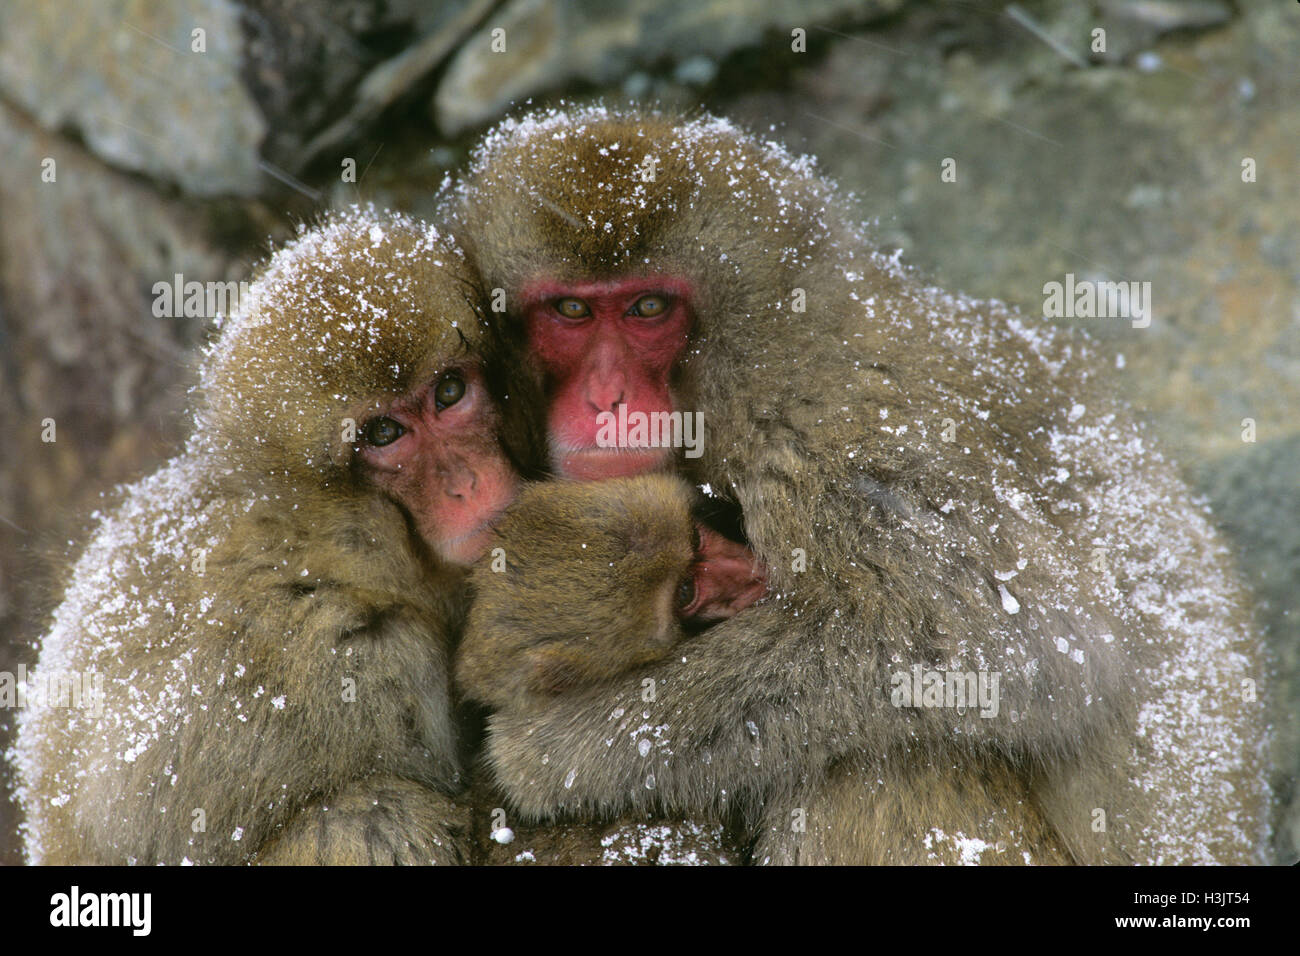 Japanese macaque (Macaca fuscata) Stock Photo